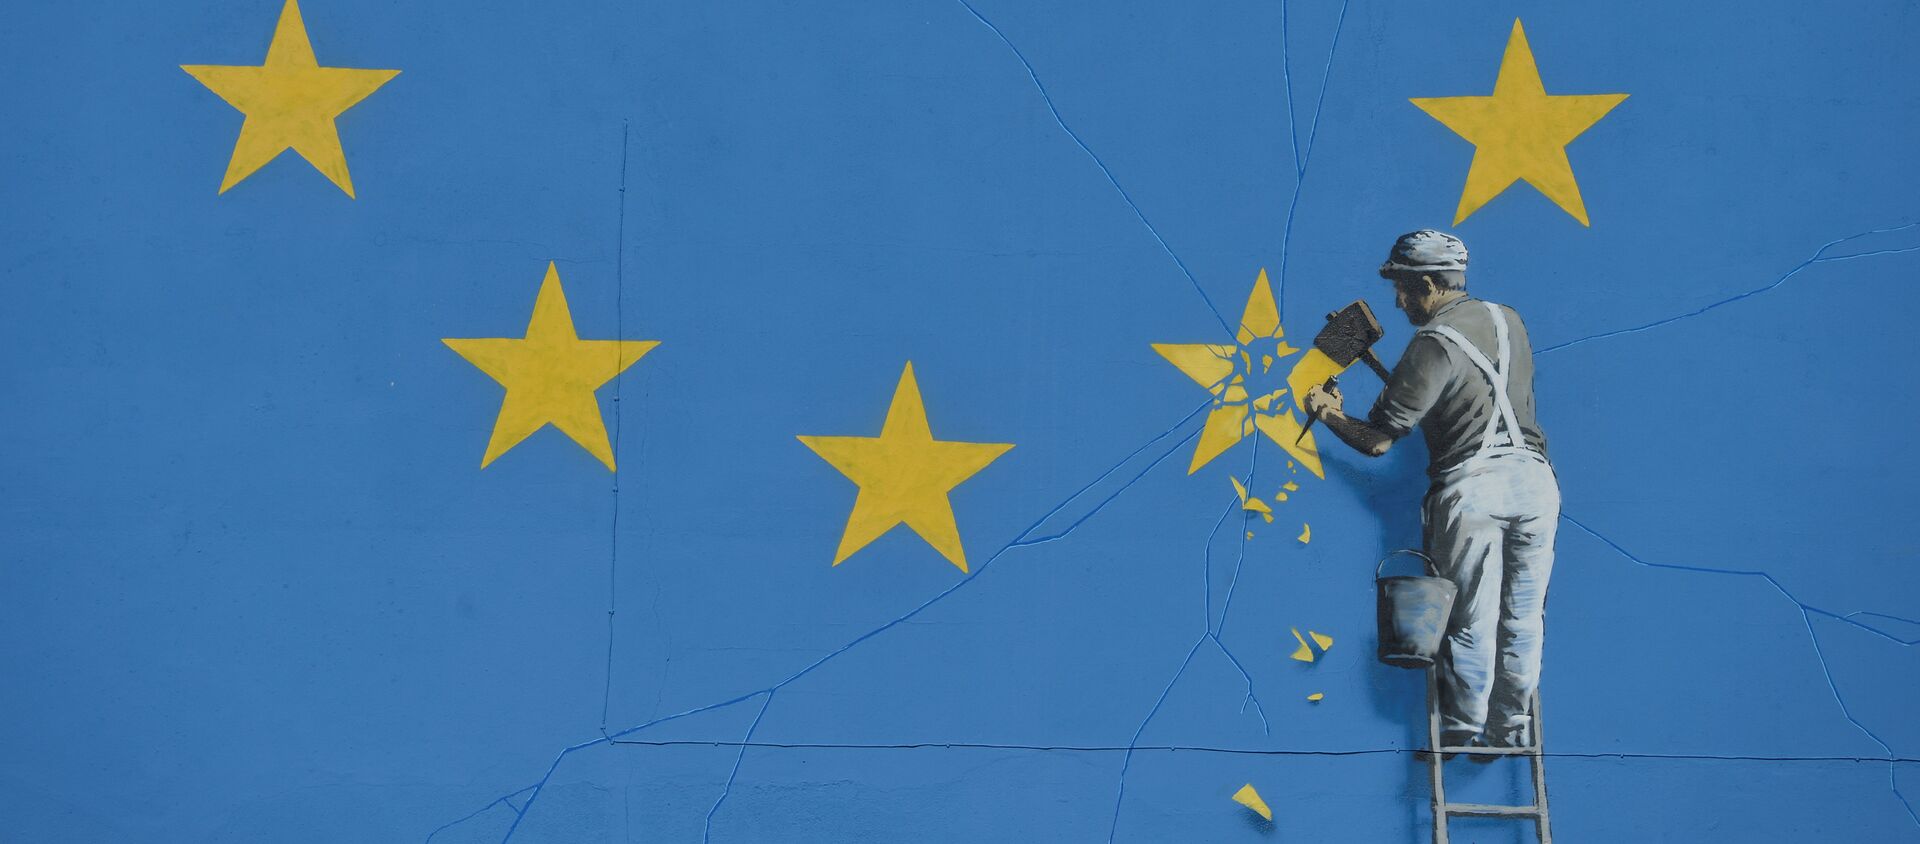 Graffiti de Banksy con la bandera rota de la UE - Sputnik Mundo, 1920, 18.11.2020